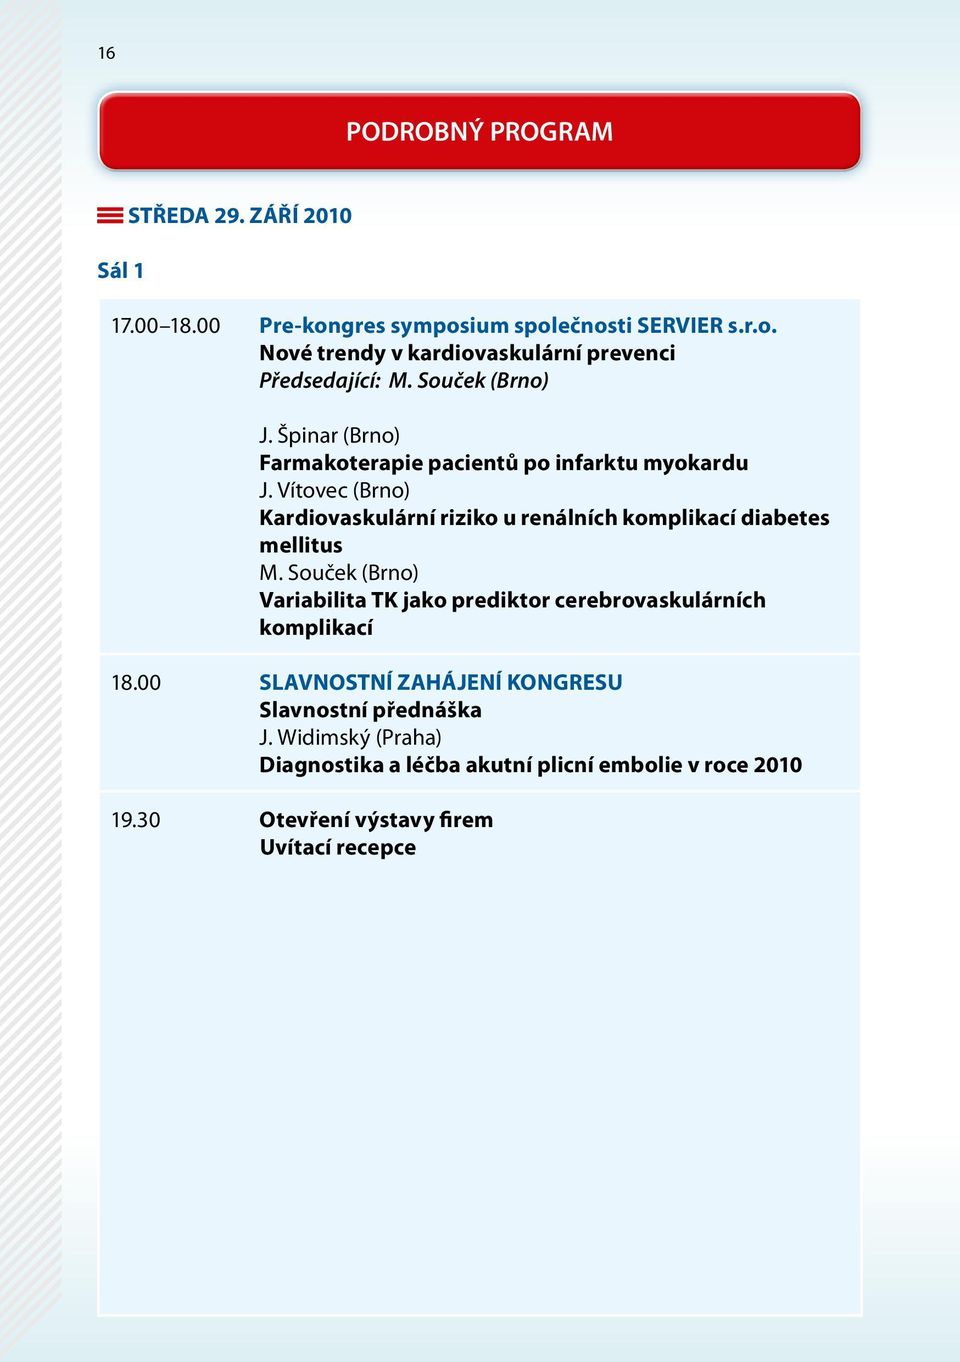 Vítovec (Brno) kardiovaskulární riziko u renálních komplikací diabetes mellitus M.